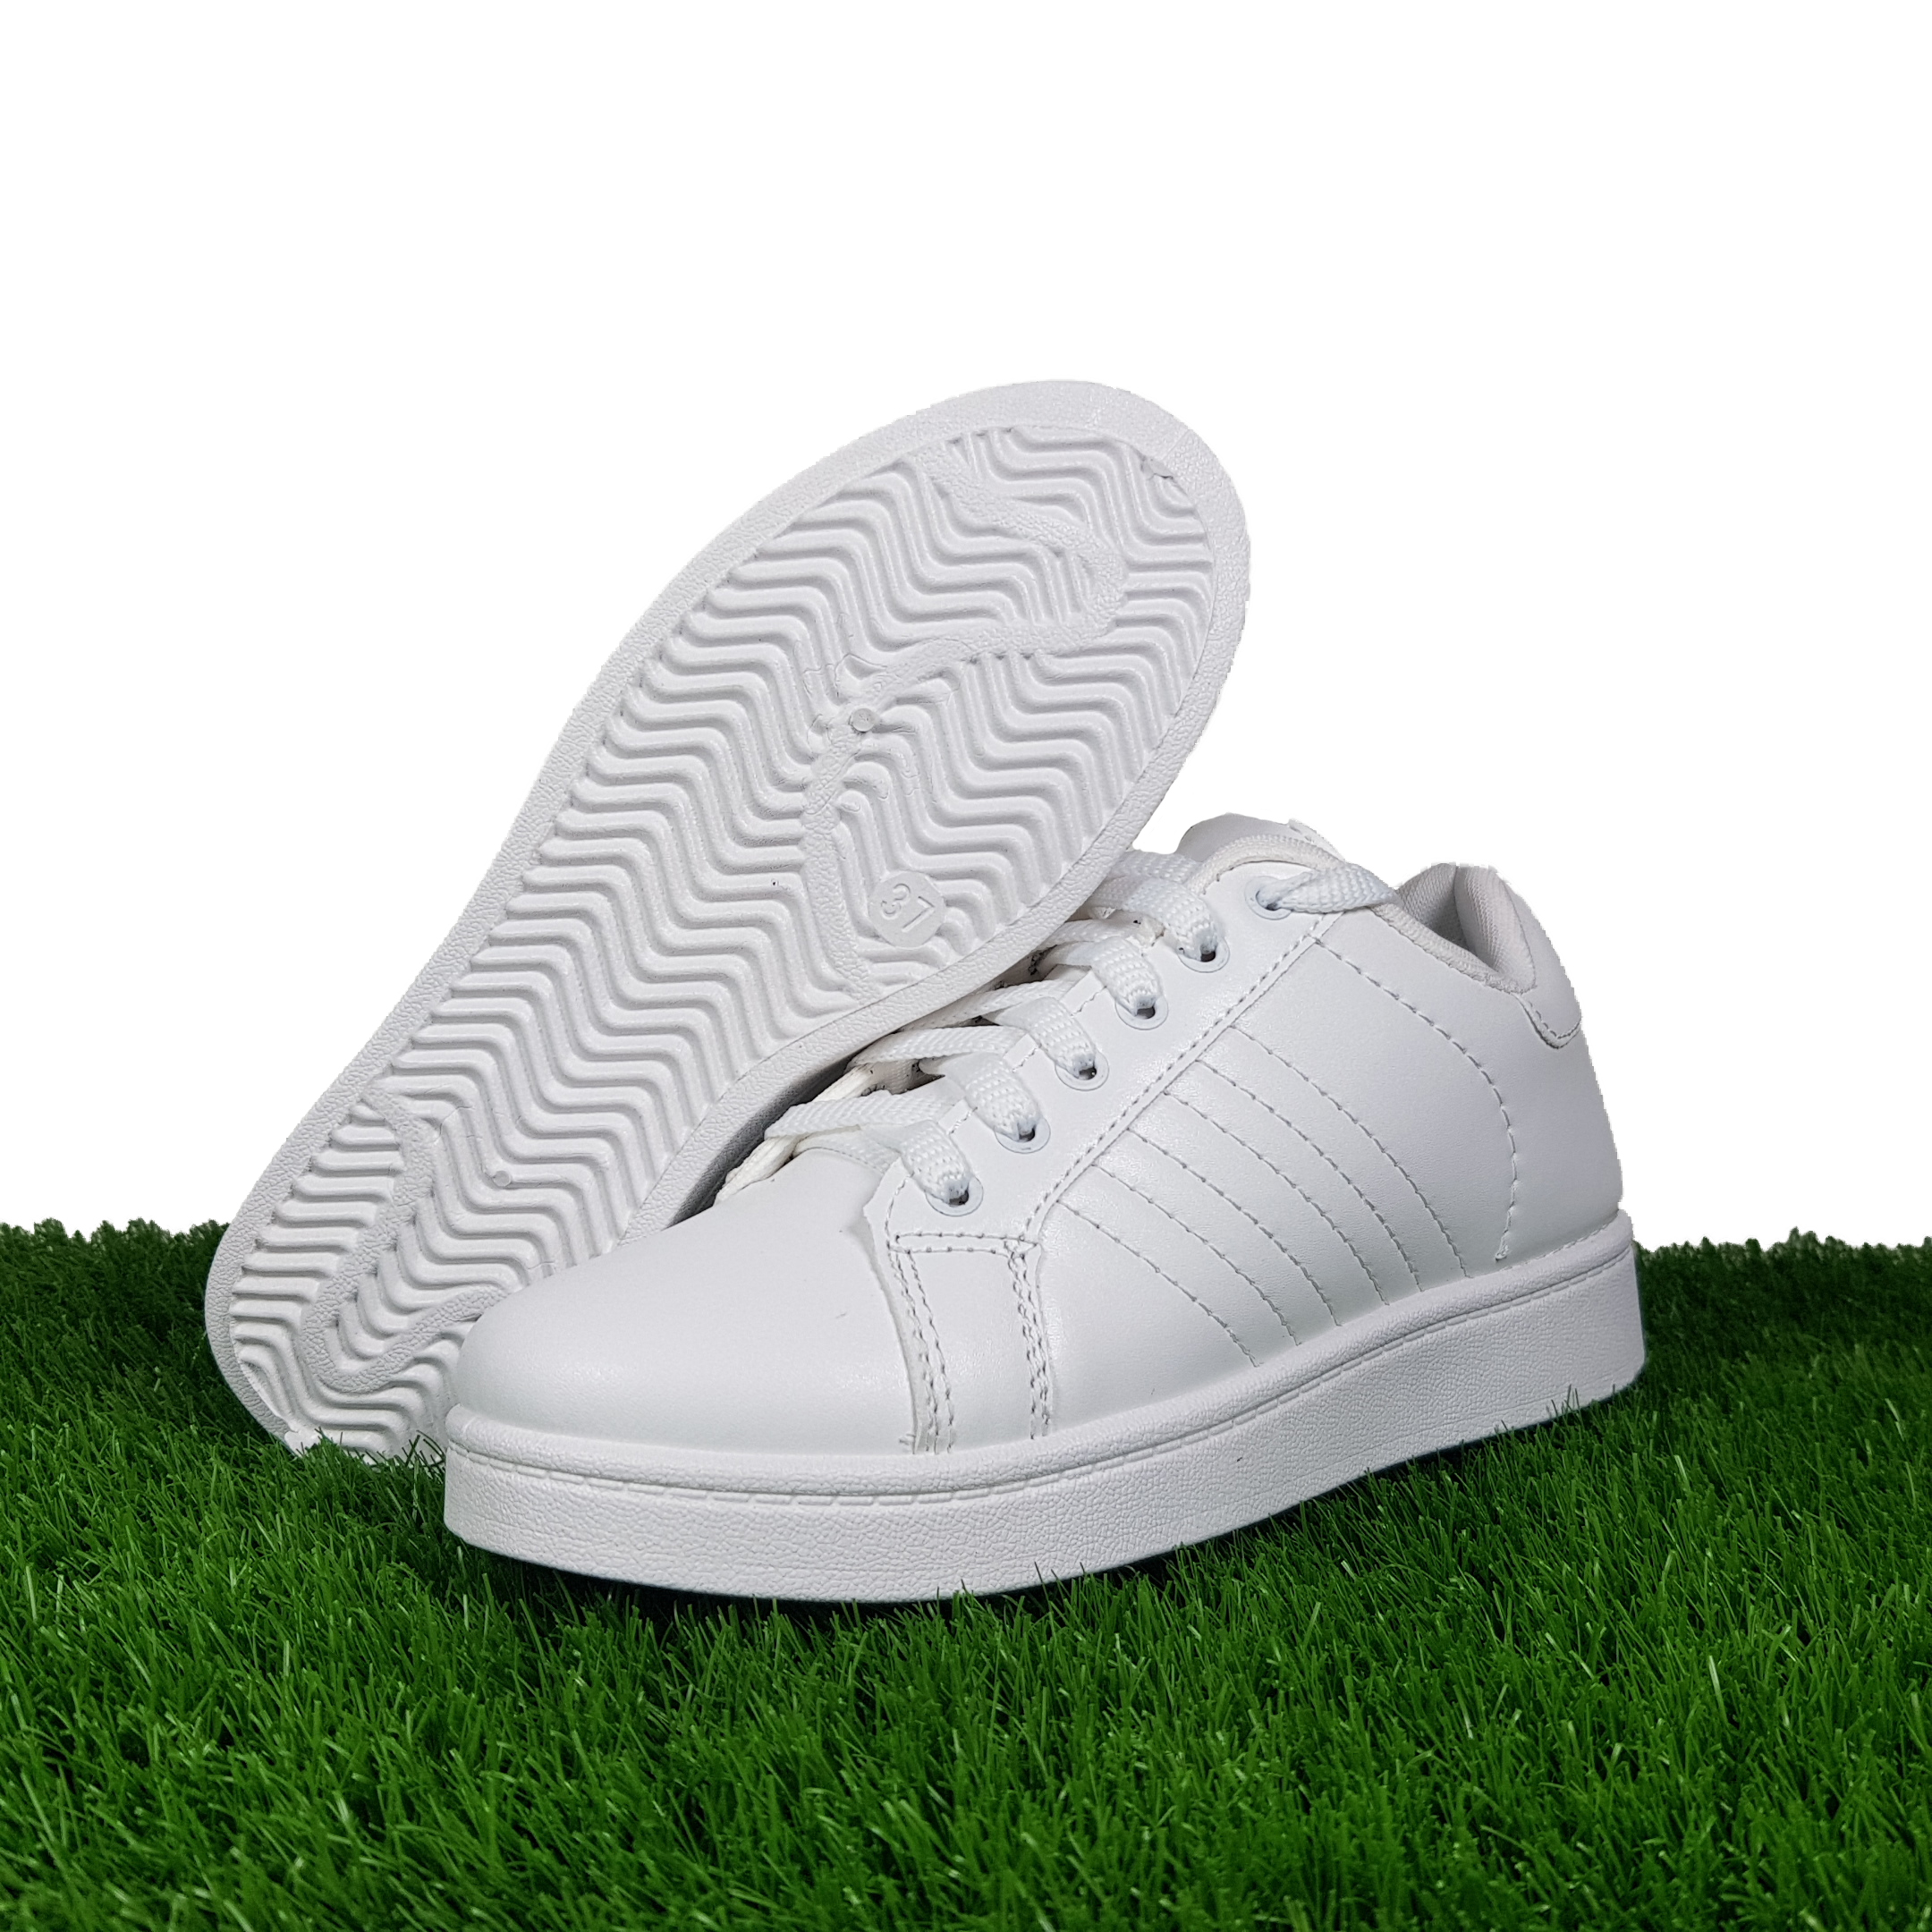 مشخصات، قیمت و خرید کفش راحتی مدل Stan Smith 1990 رنگ سفید | دیجی\u200cکالا